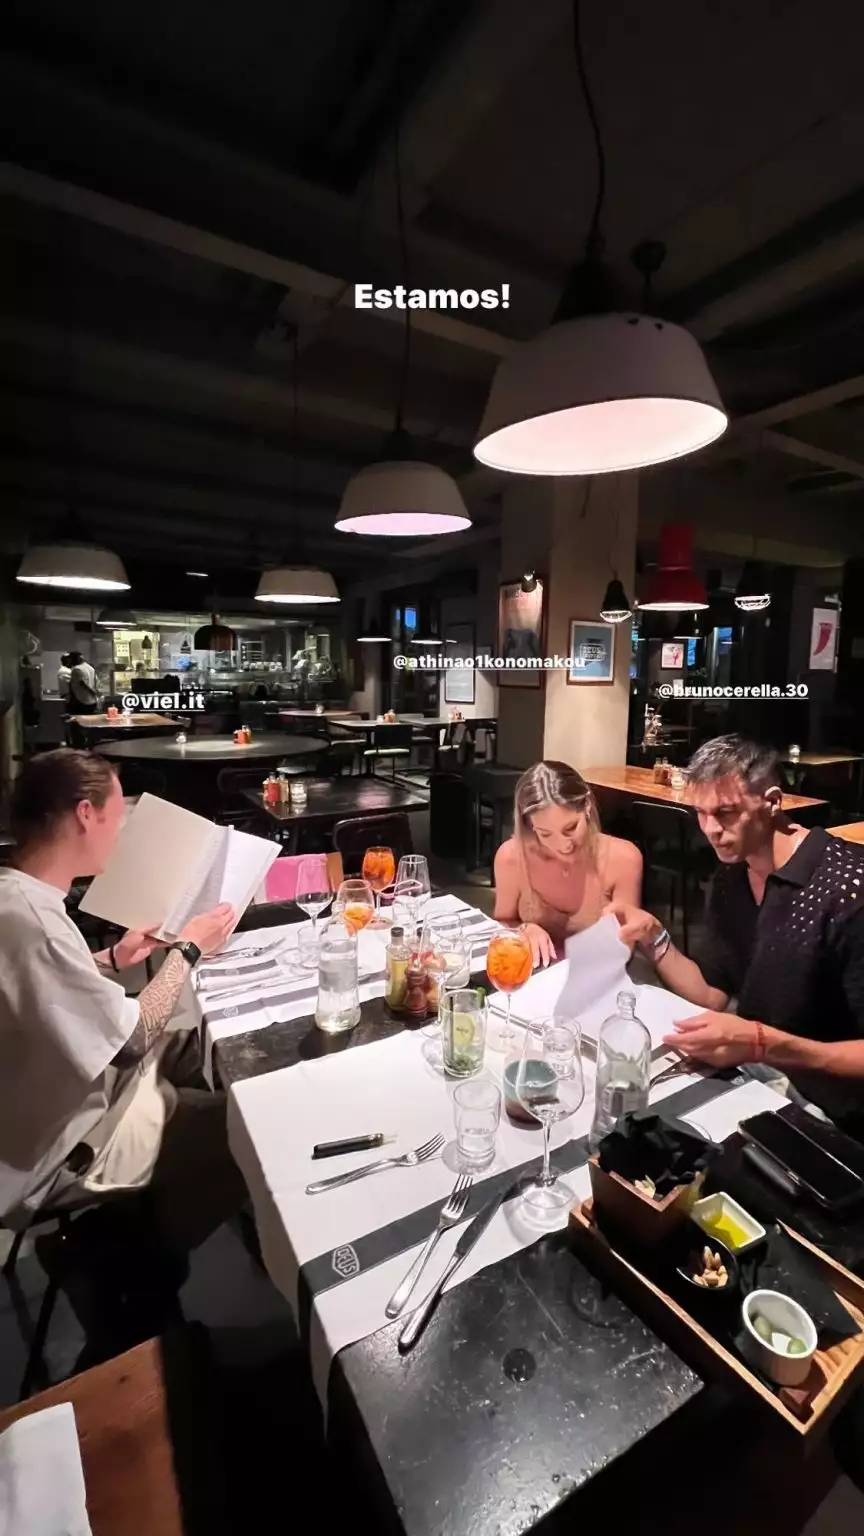 Αθηνά Οικονομάκου: Το ρομαντικό δείπνο με τον Bruno Cerella σε εστιατόριο στο Μιλάνο